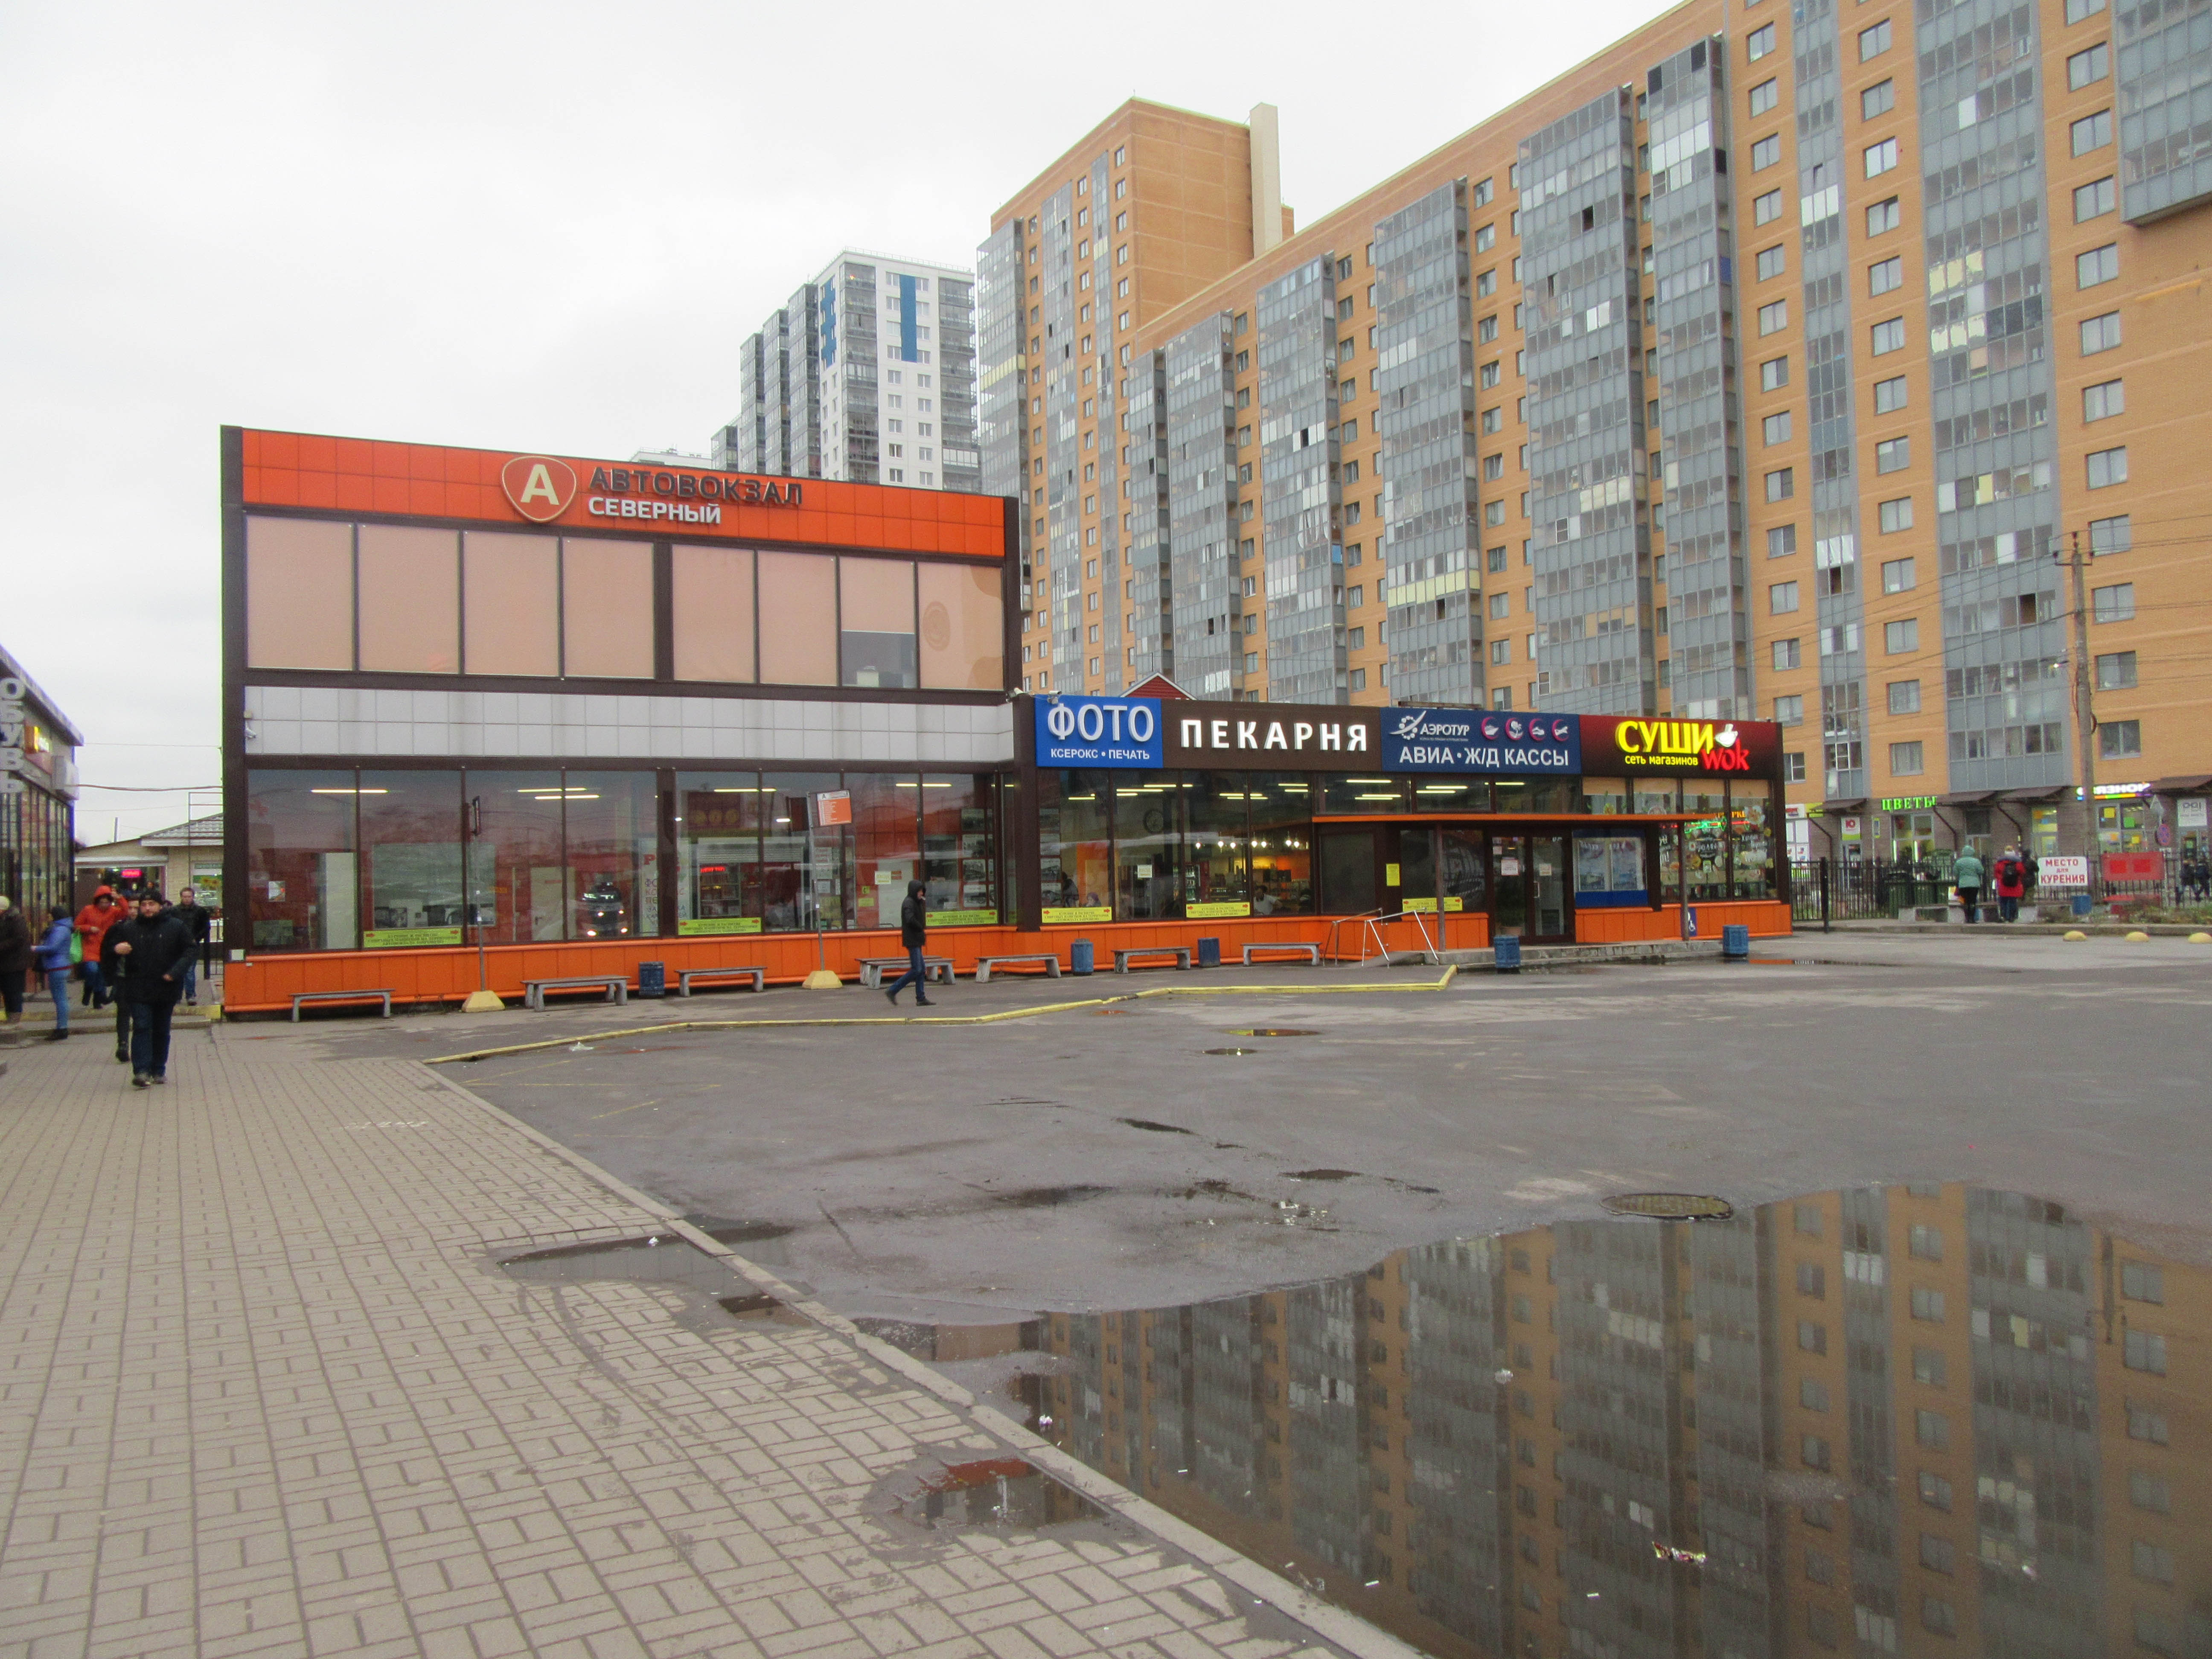 Се́верный — междугородный автобусный вокзал в городе Мурино Всеволожского р...